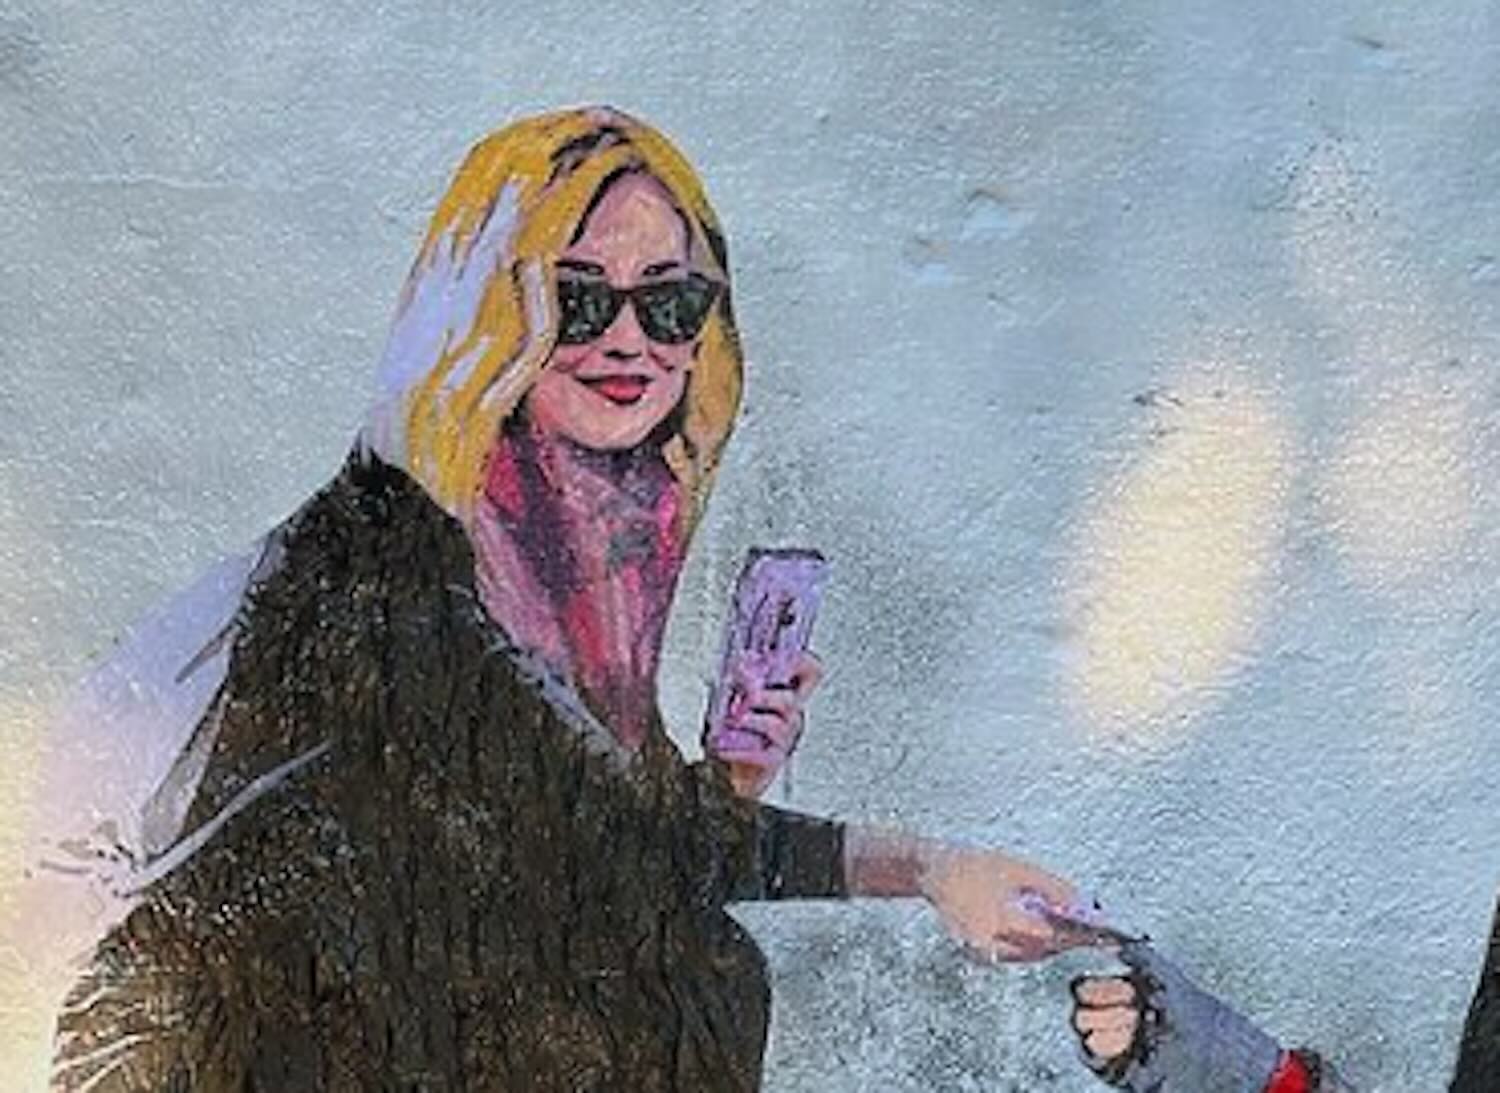 O mural tóxico contra Chiara Ferragni e TvBoy acusando-a de “falsos” trabalhos de caridade.